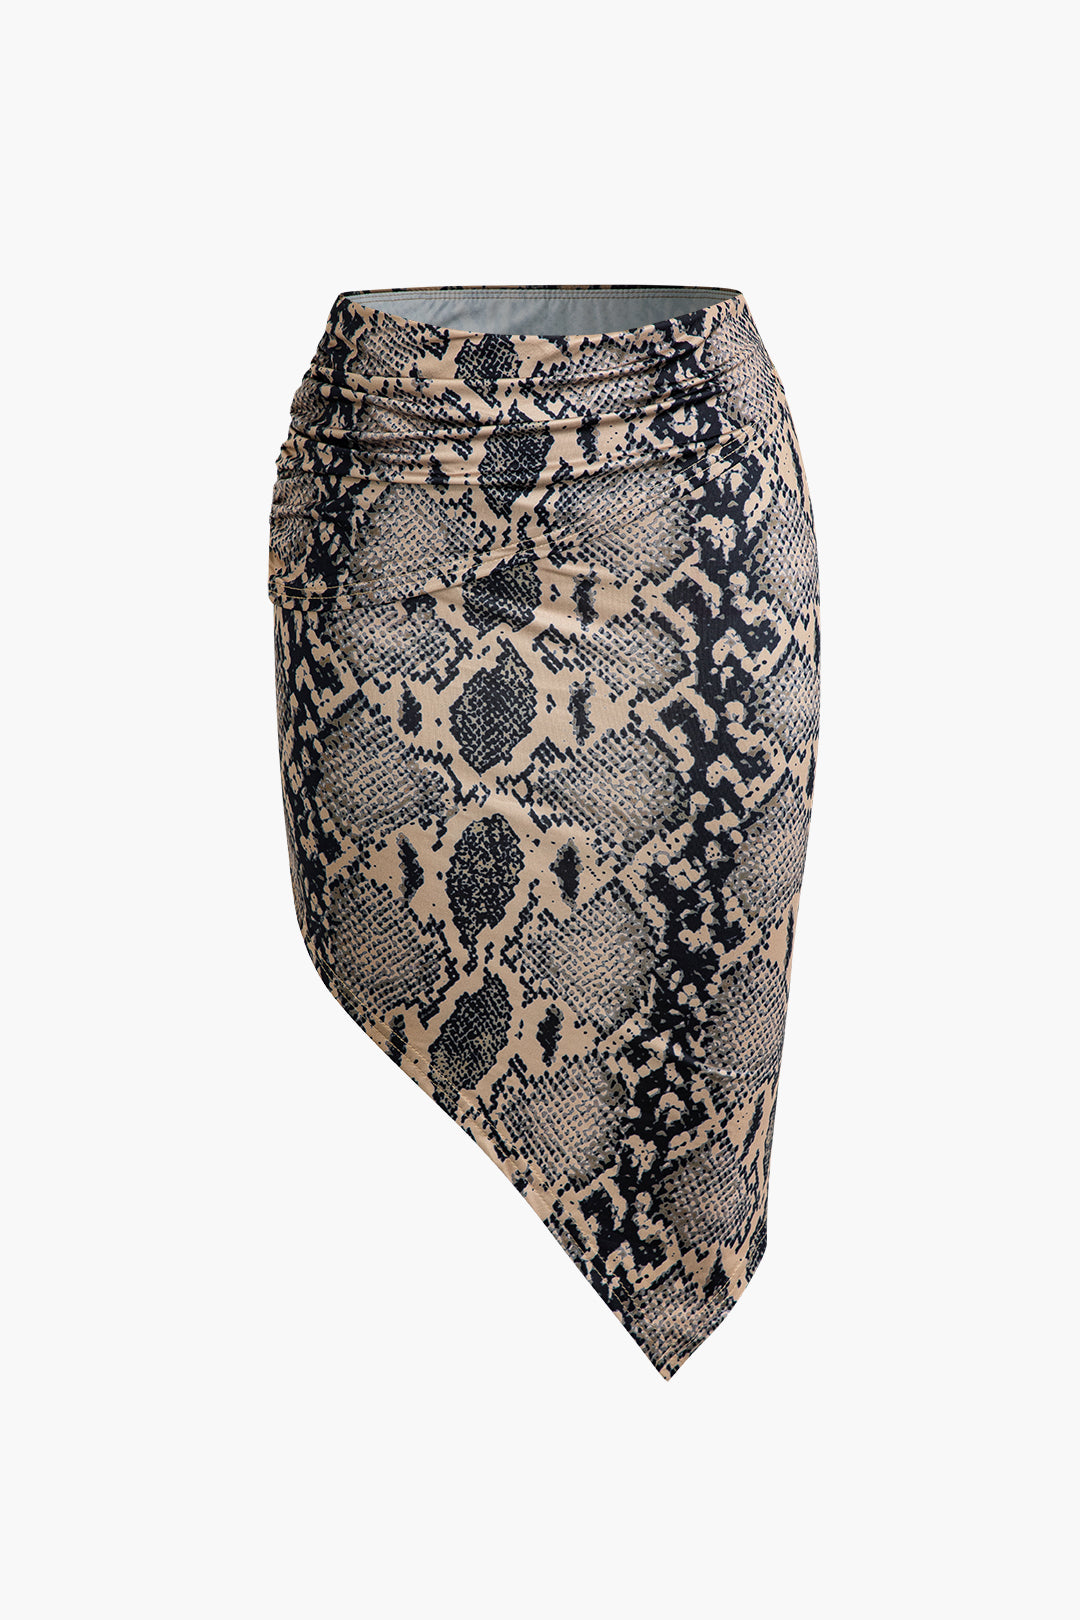 Snake Print Crop Cami Top And Skirt Set